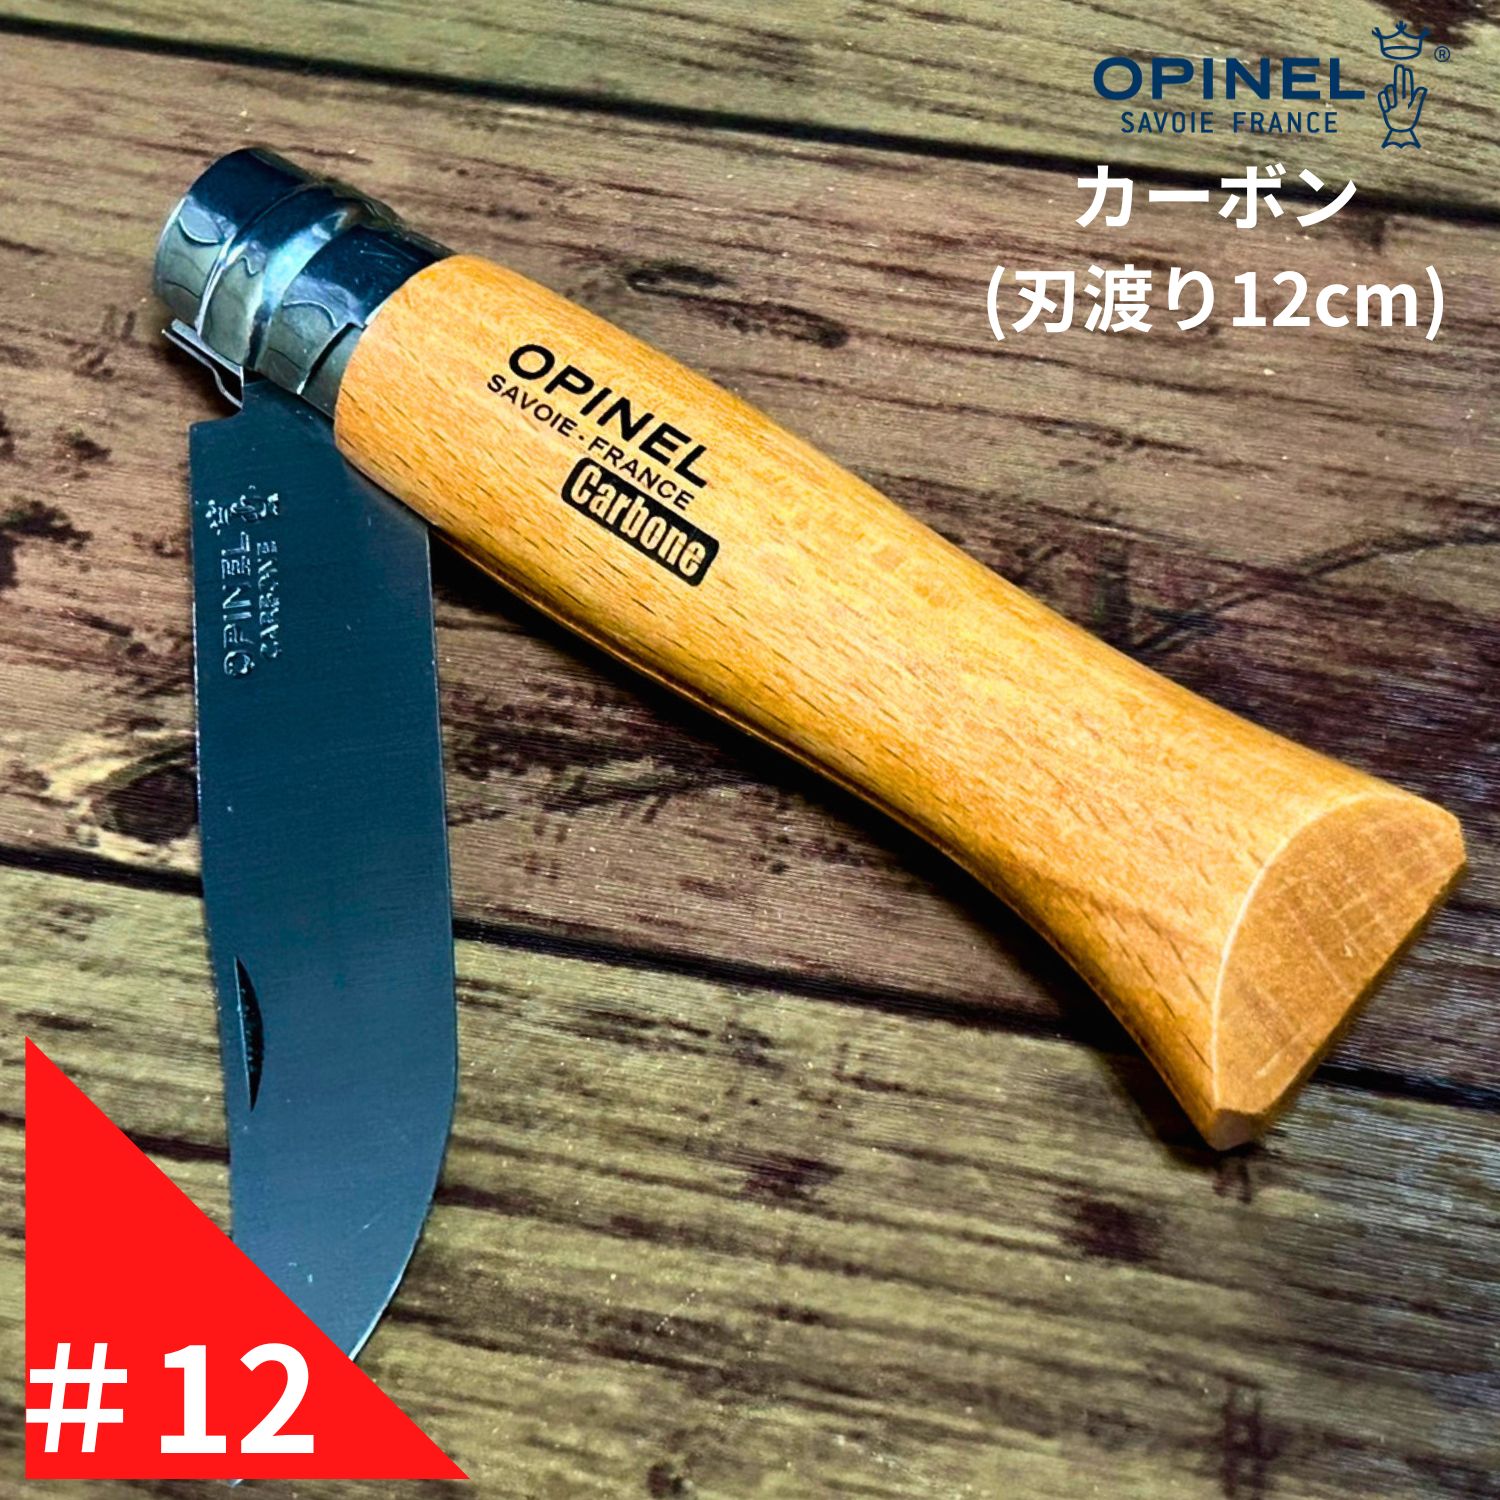 Opinel オピネル カーボン No.12 フォールディングナイフ キャンプ アウトドア 釣り オピネルナイフ 折り畳み式 かっこいい 携帯しやすい おぴねる 木柄 新生活